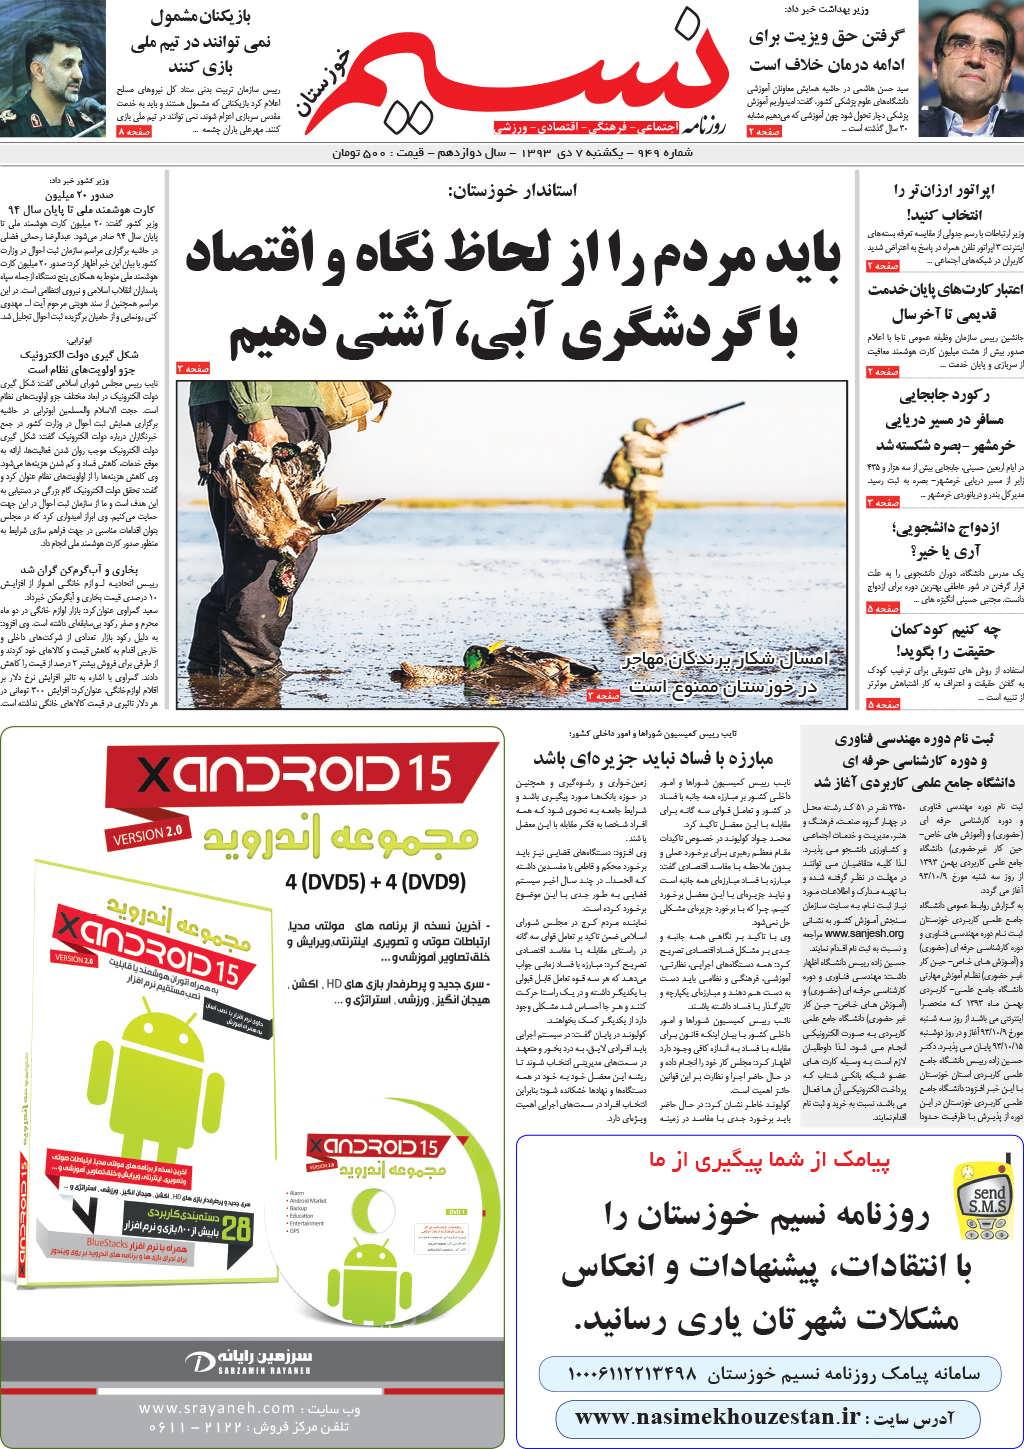 صفحه اصلی روزنامه نسیم شماره 949 